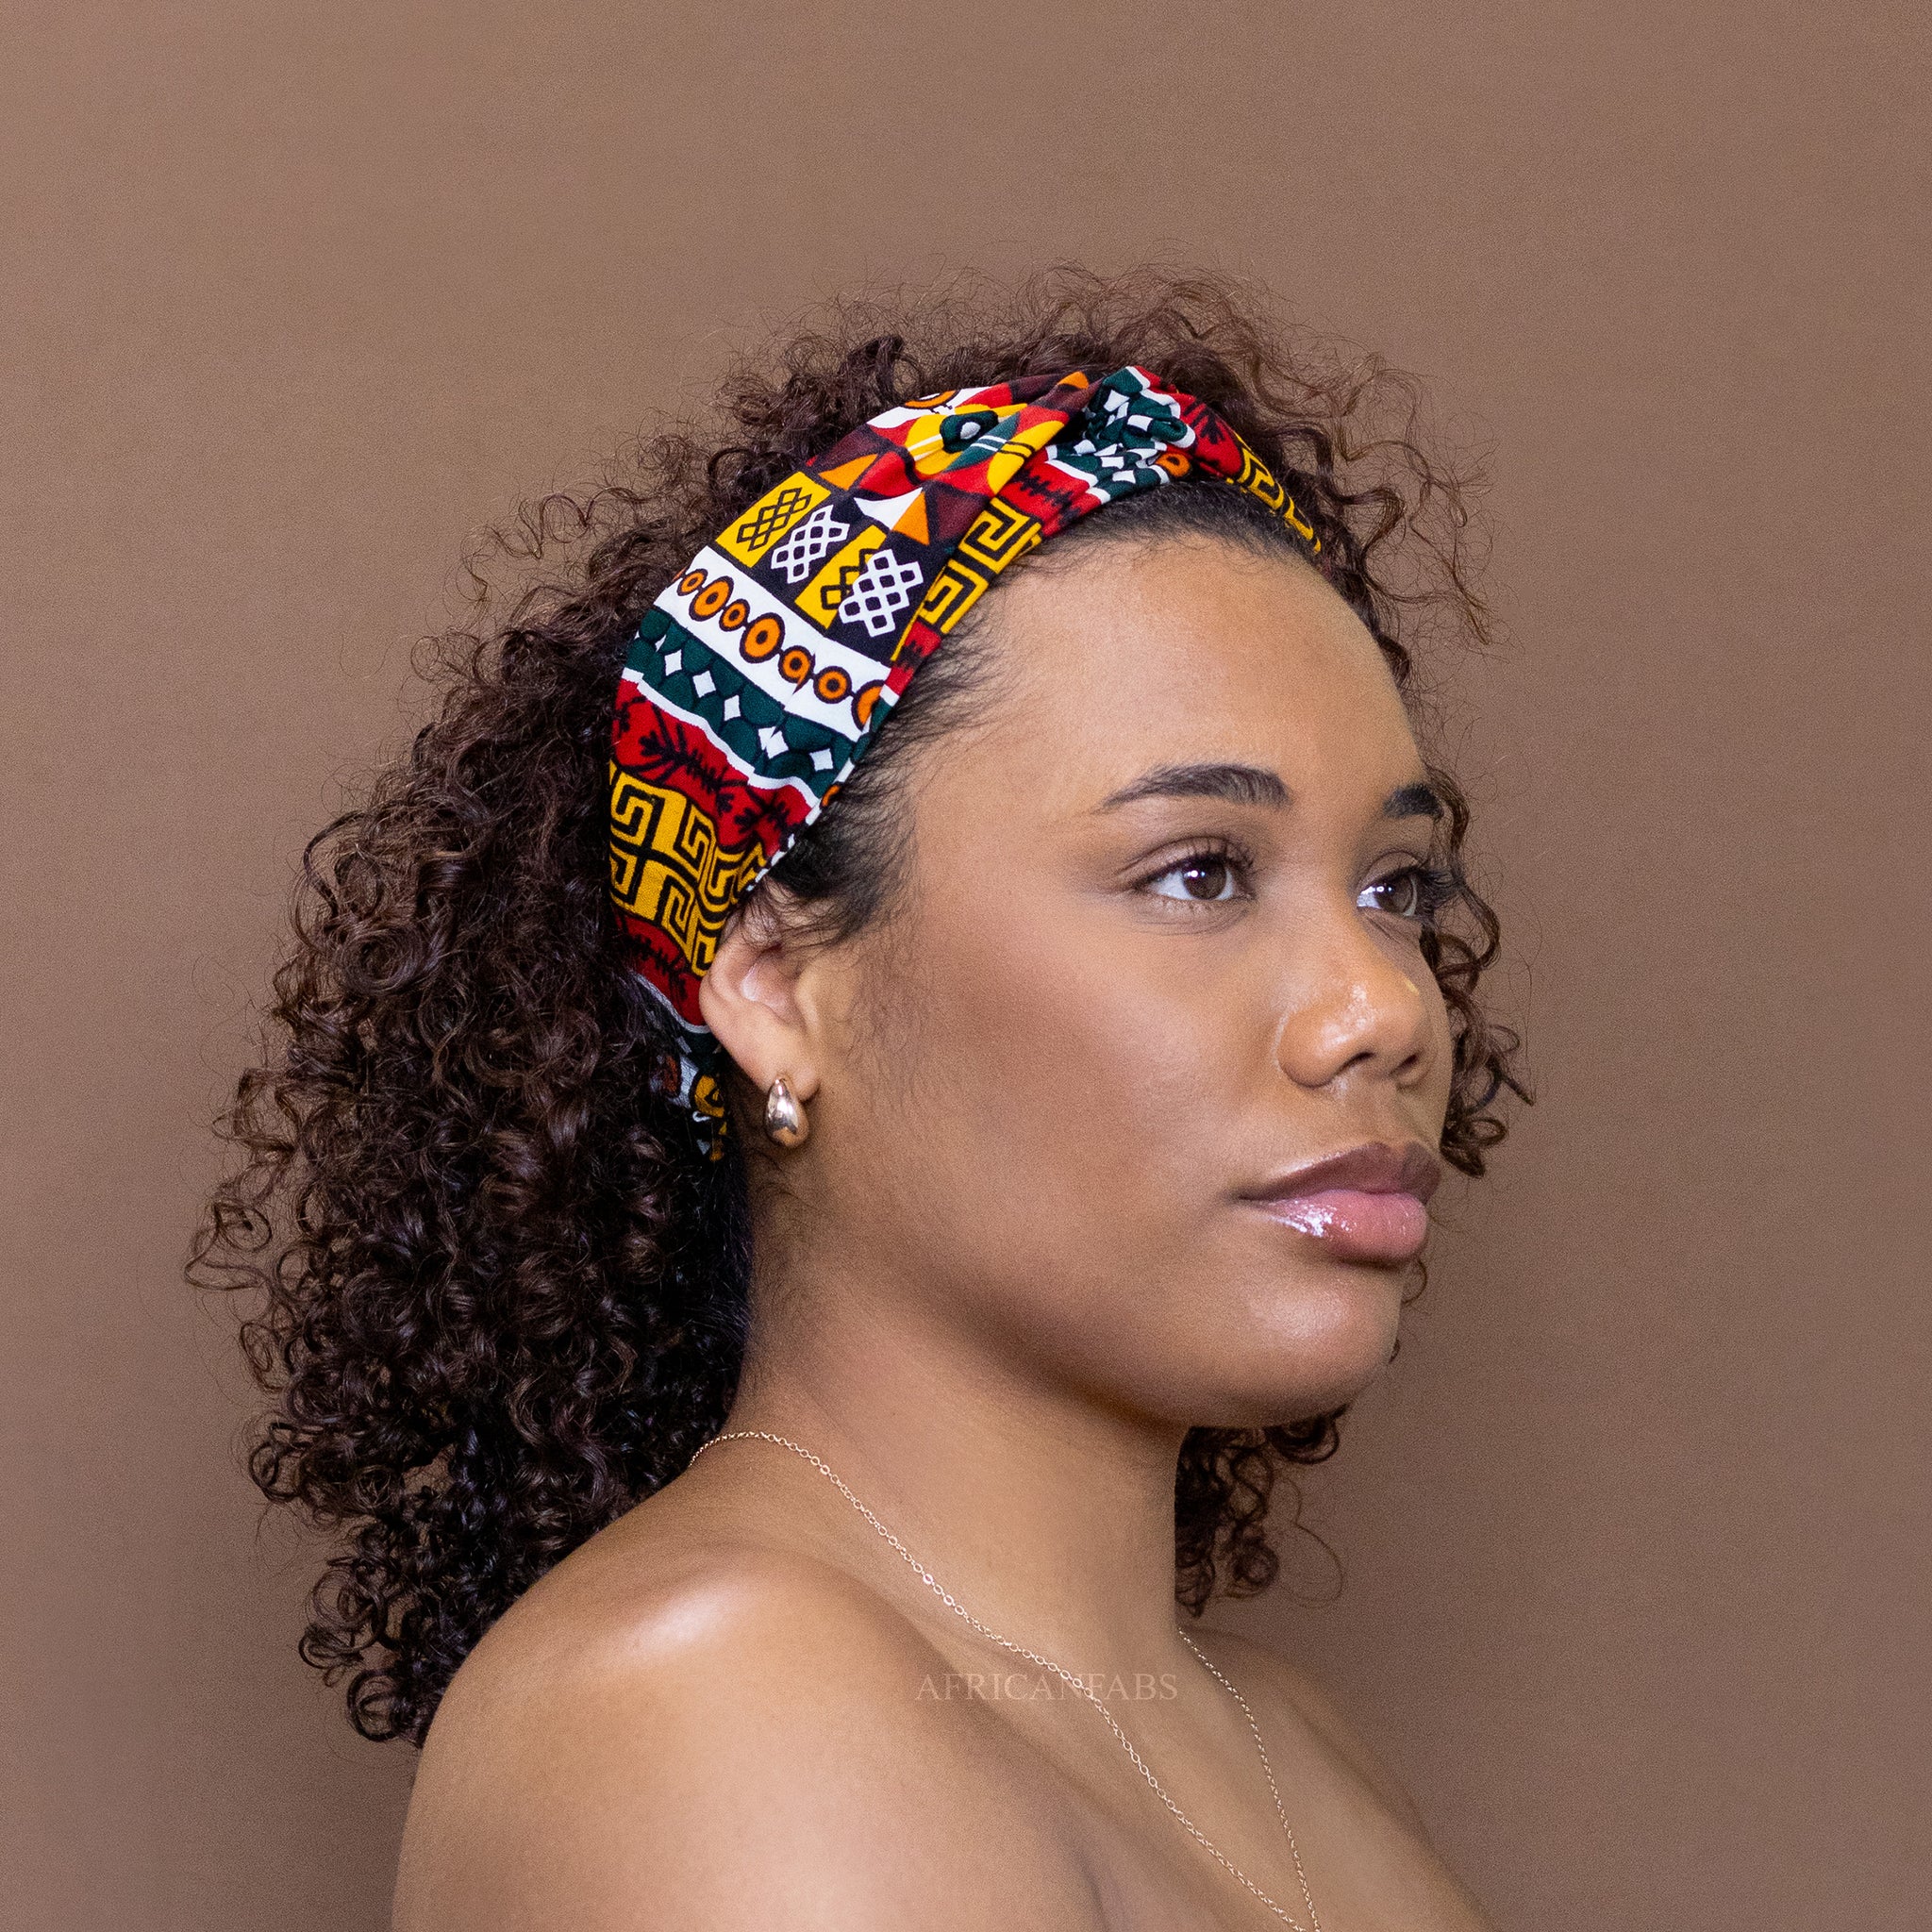 Diadema con estampado africano - Adultos - Accesorios para el cabello - Negro / rojo kente